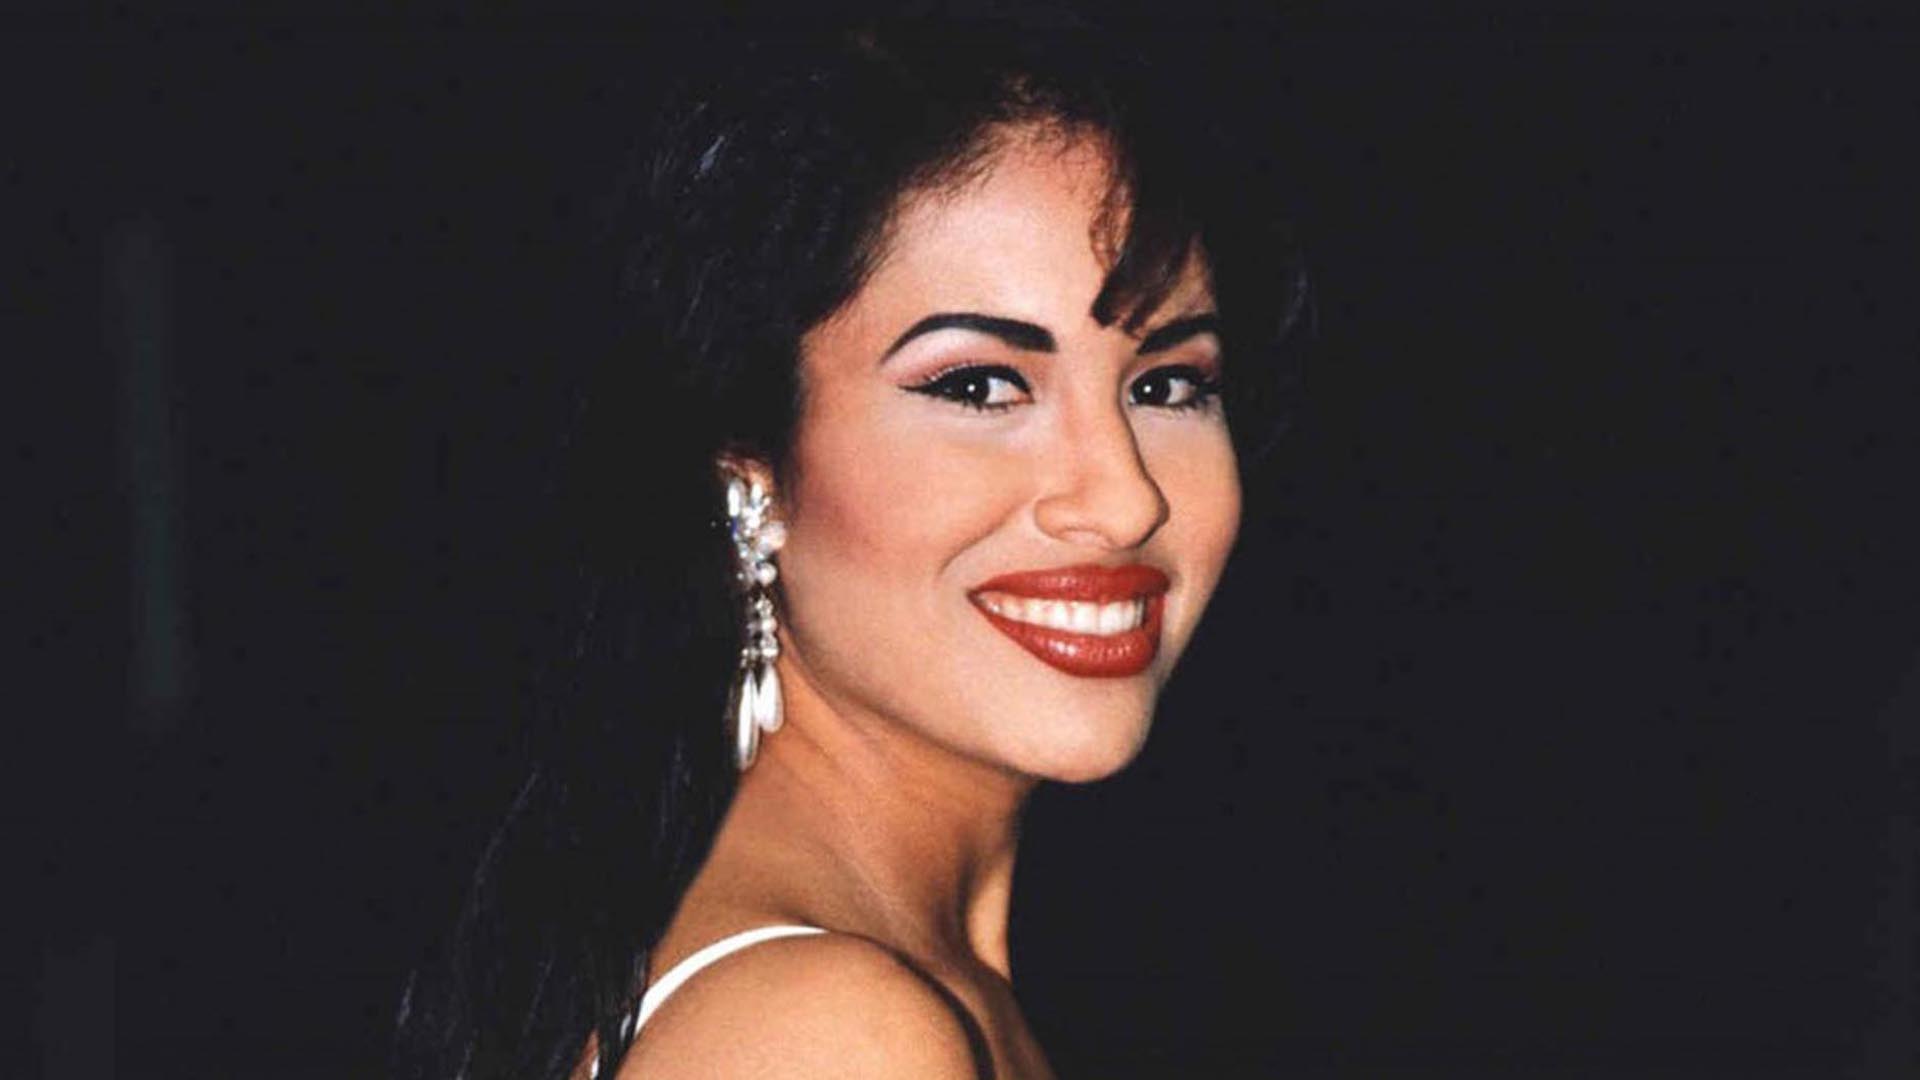 Selena Quintanilla falleció a los 23 años a causa de un disparo en el brazo derecho que dio en una arteria vital (Foto: Archivo)